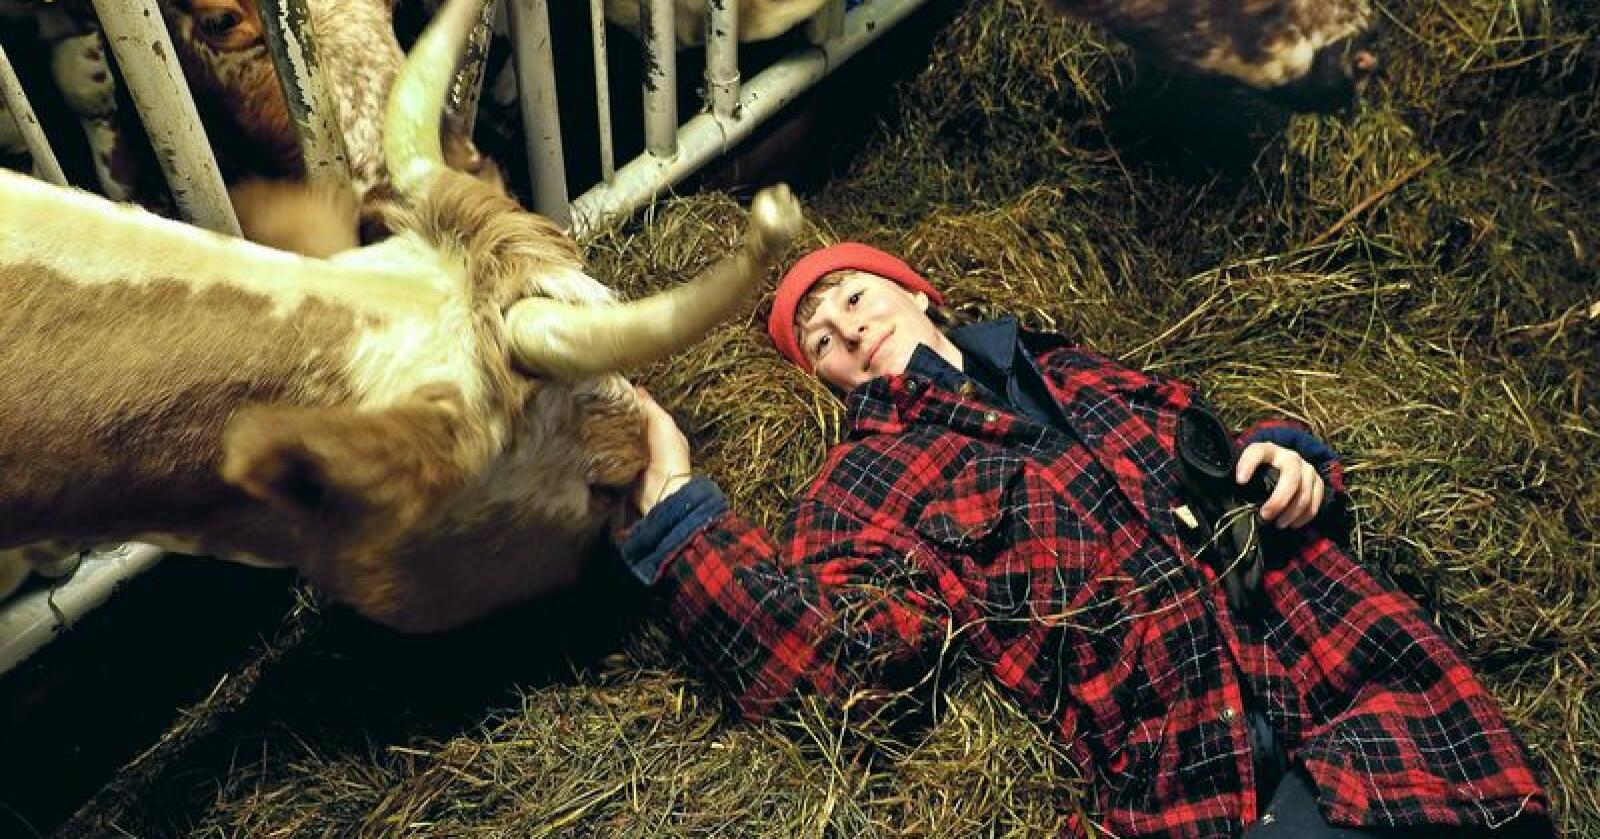 Kjærligheten til dyr var den største motivasjonen Kathrine Kinn hadde for å jobbe som bonde. Foto: Siri Juell Rasmussen